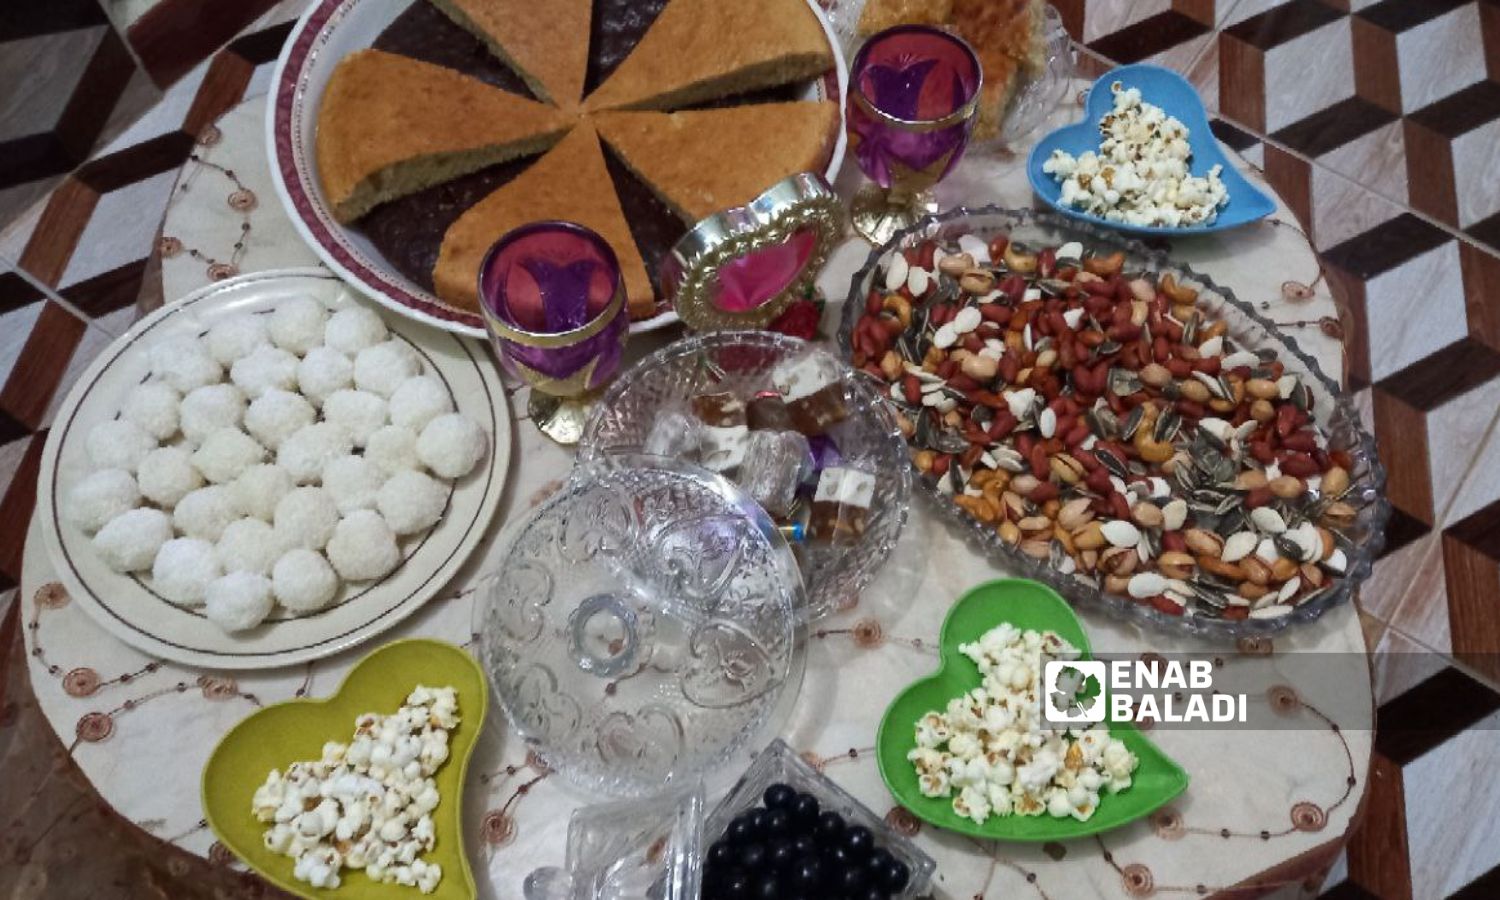 Varieties of home-prepared food in Daraa governorate (Enab Baladi)